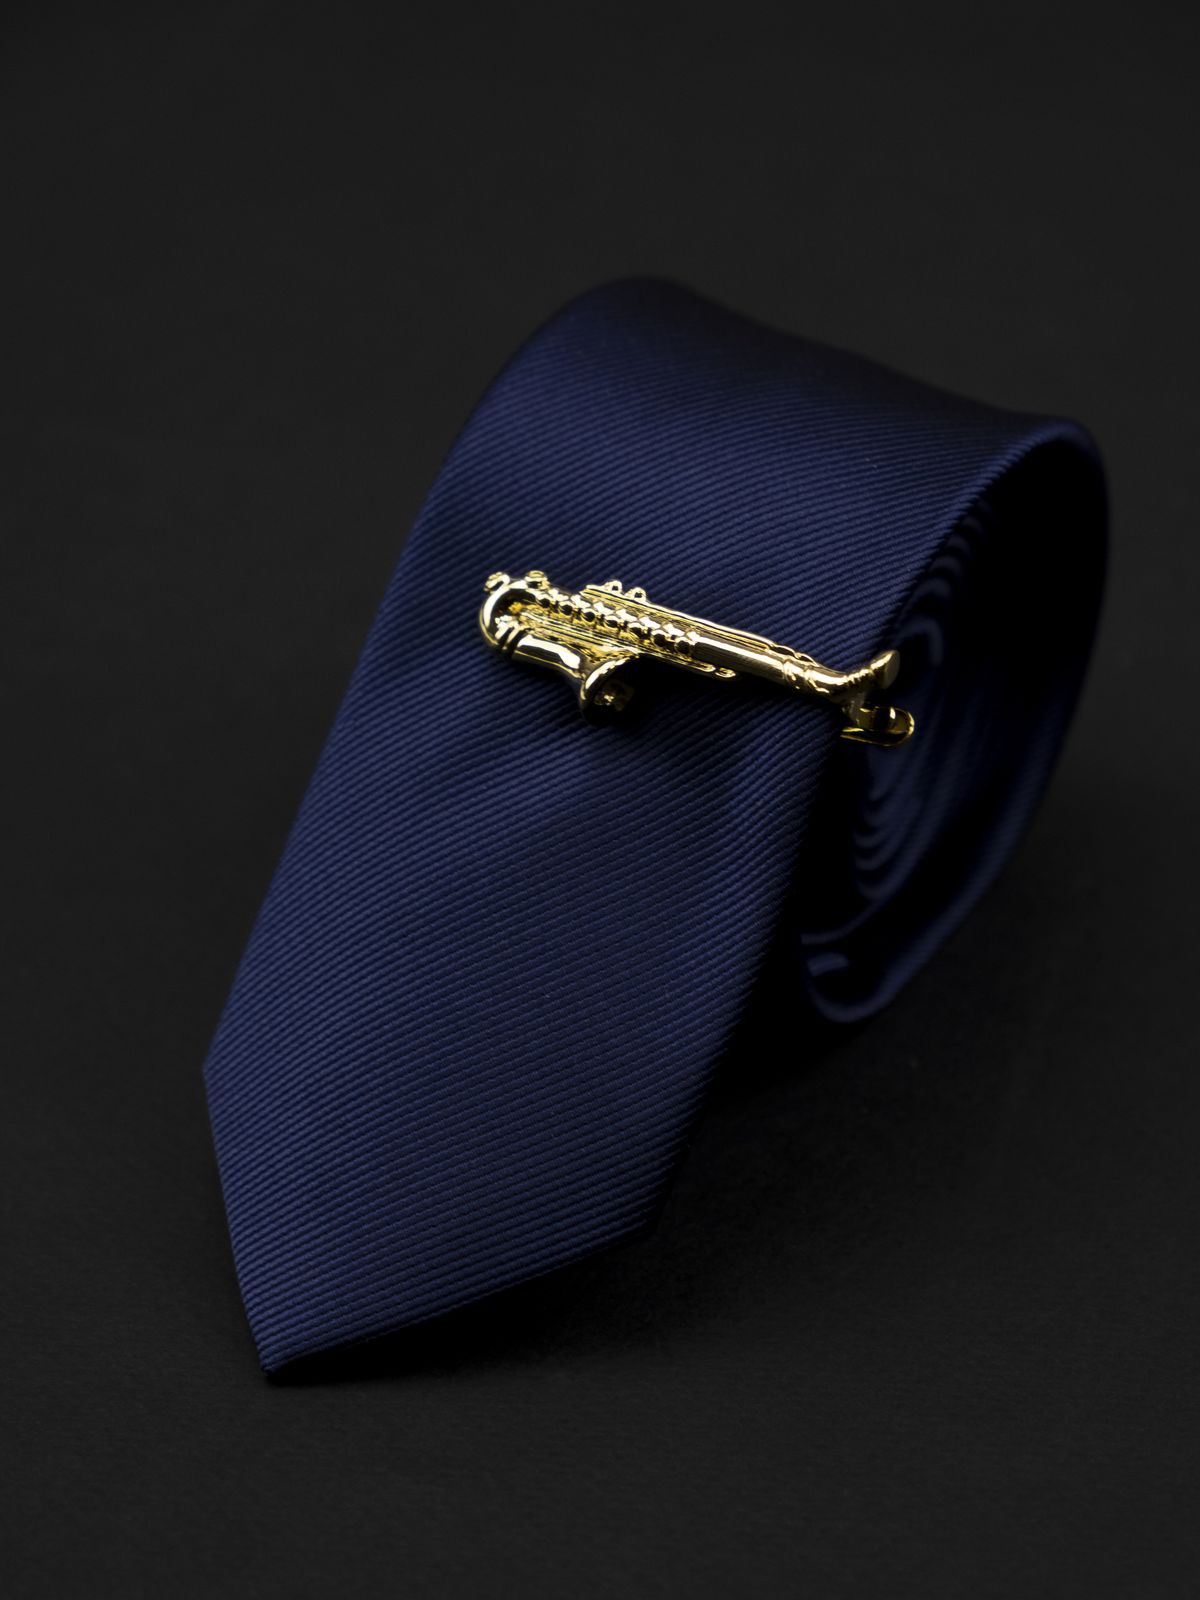 Зажим для галстука саксофон золотой  купить. Состав: Ювелирная сталь 316L, Цвет: Золотой , Габариты: 5 см. х 2 см., Вес: 12; 